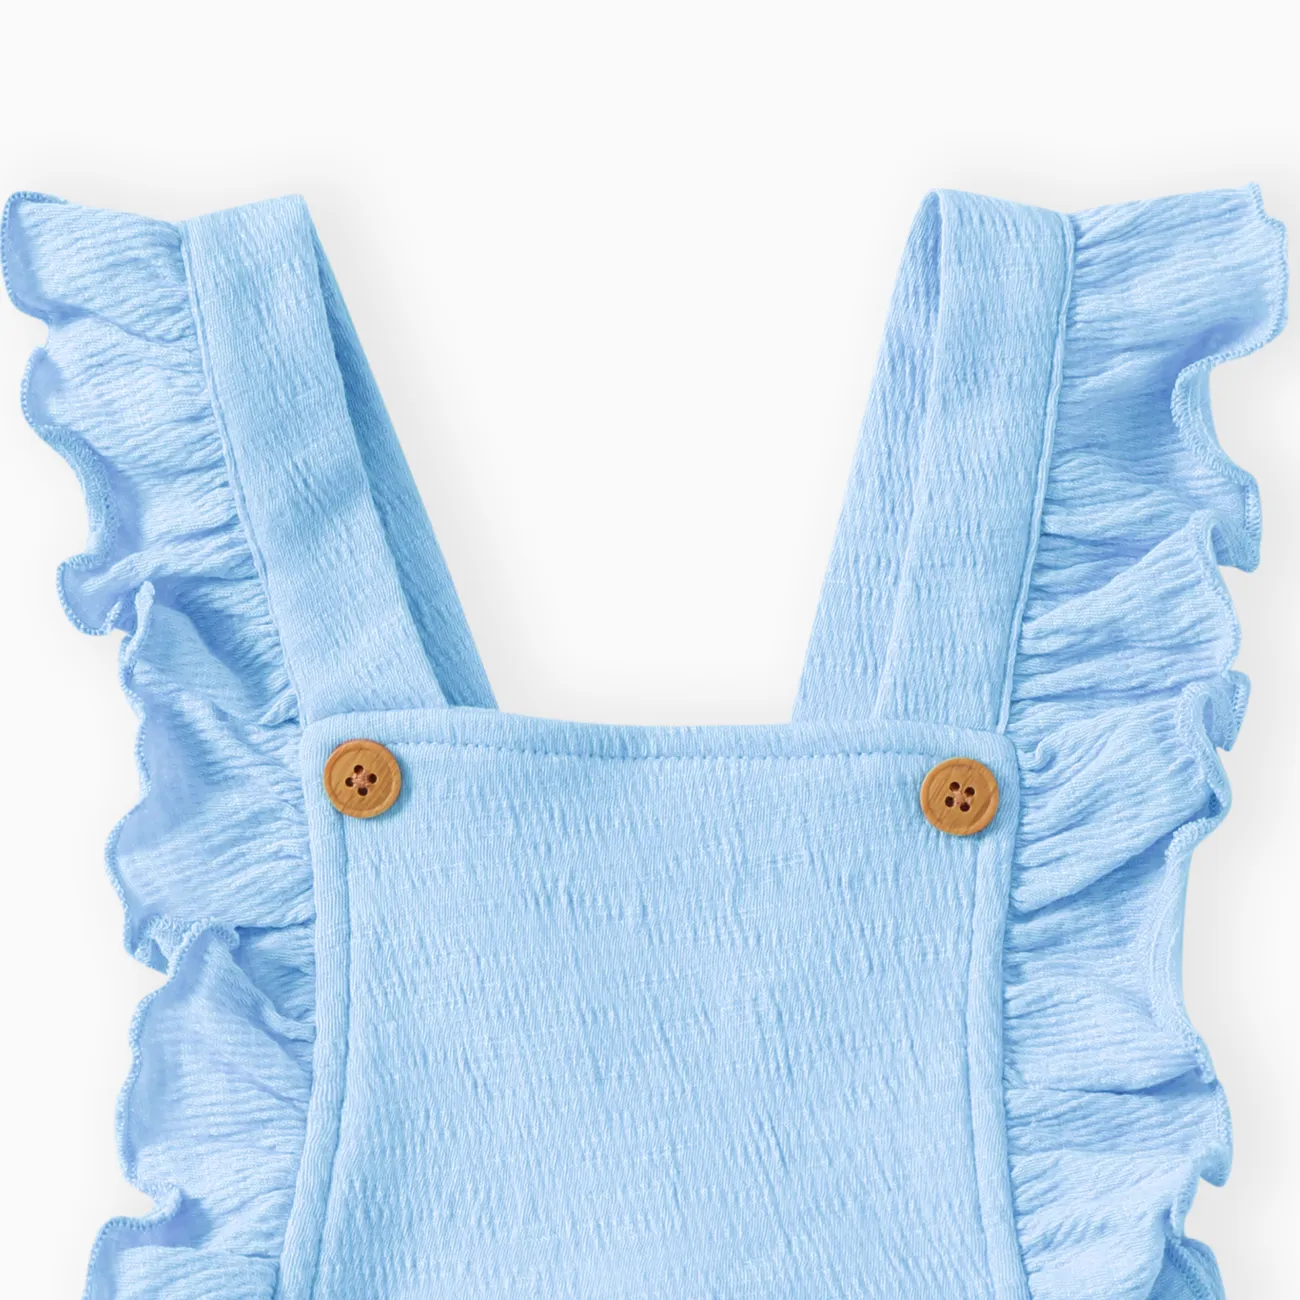 嬰兒 女 荷葉邊 甜美 無袖 連身衣 藍色 big image 1